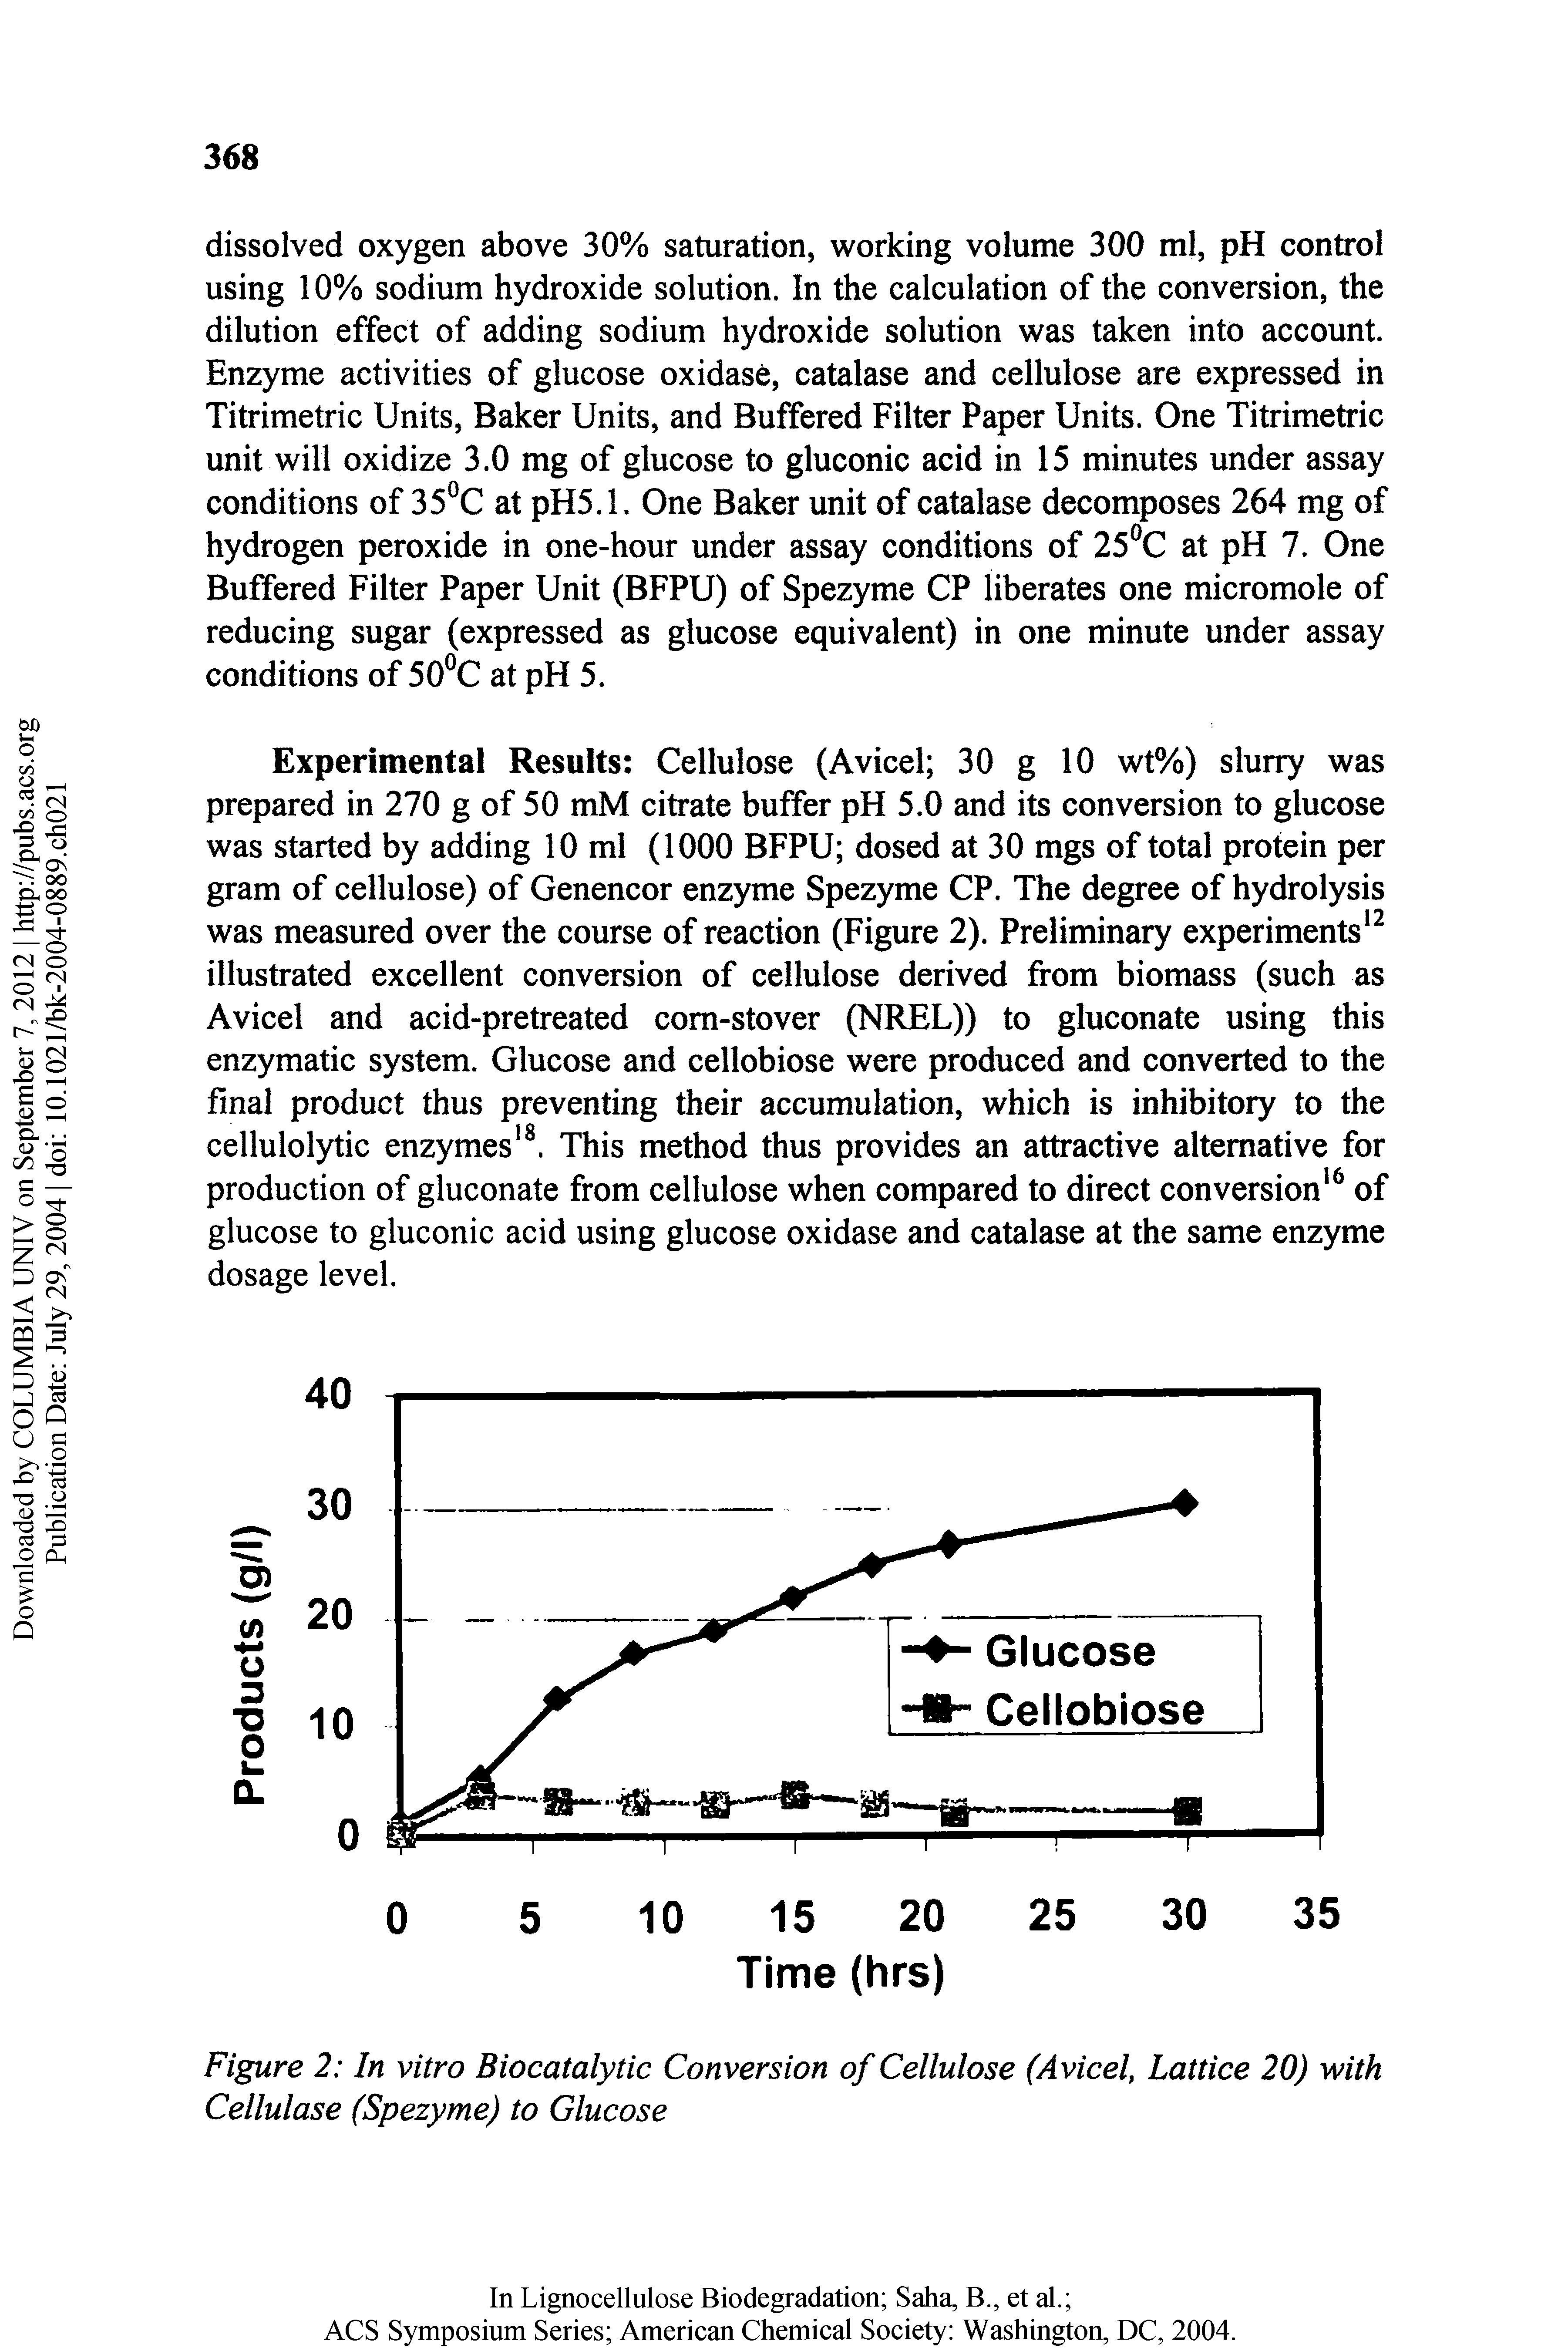 Figure 2 In vitro Biocatalytic Conversion of Cellulose (Avicel, Lattice 20) with Cellulose (Spezyme) to Glucose...